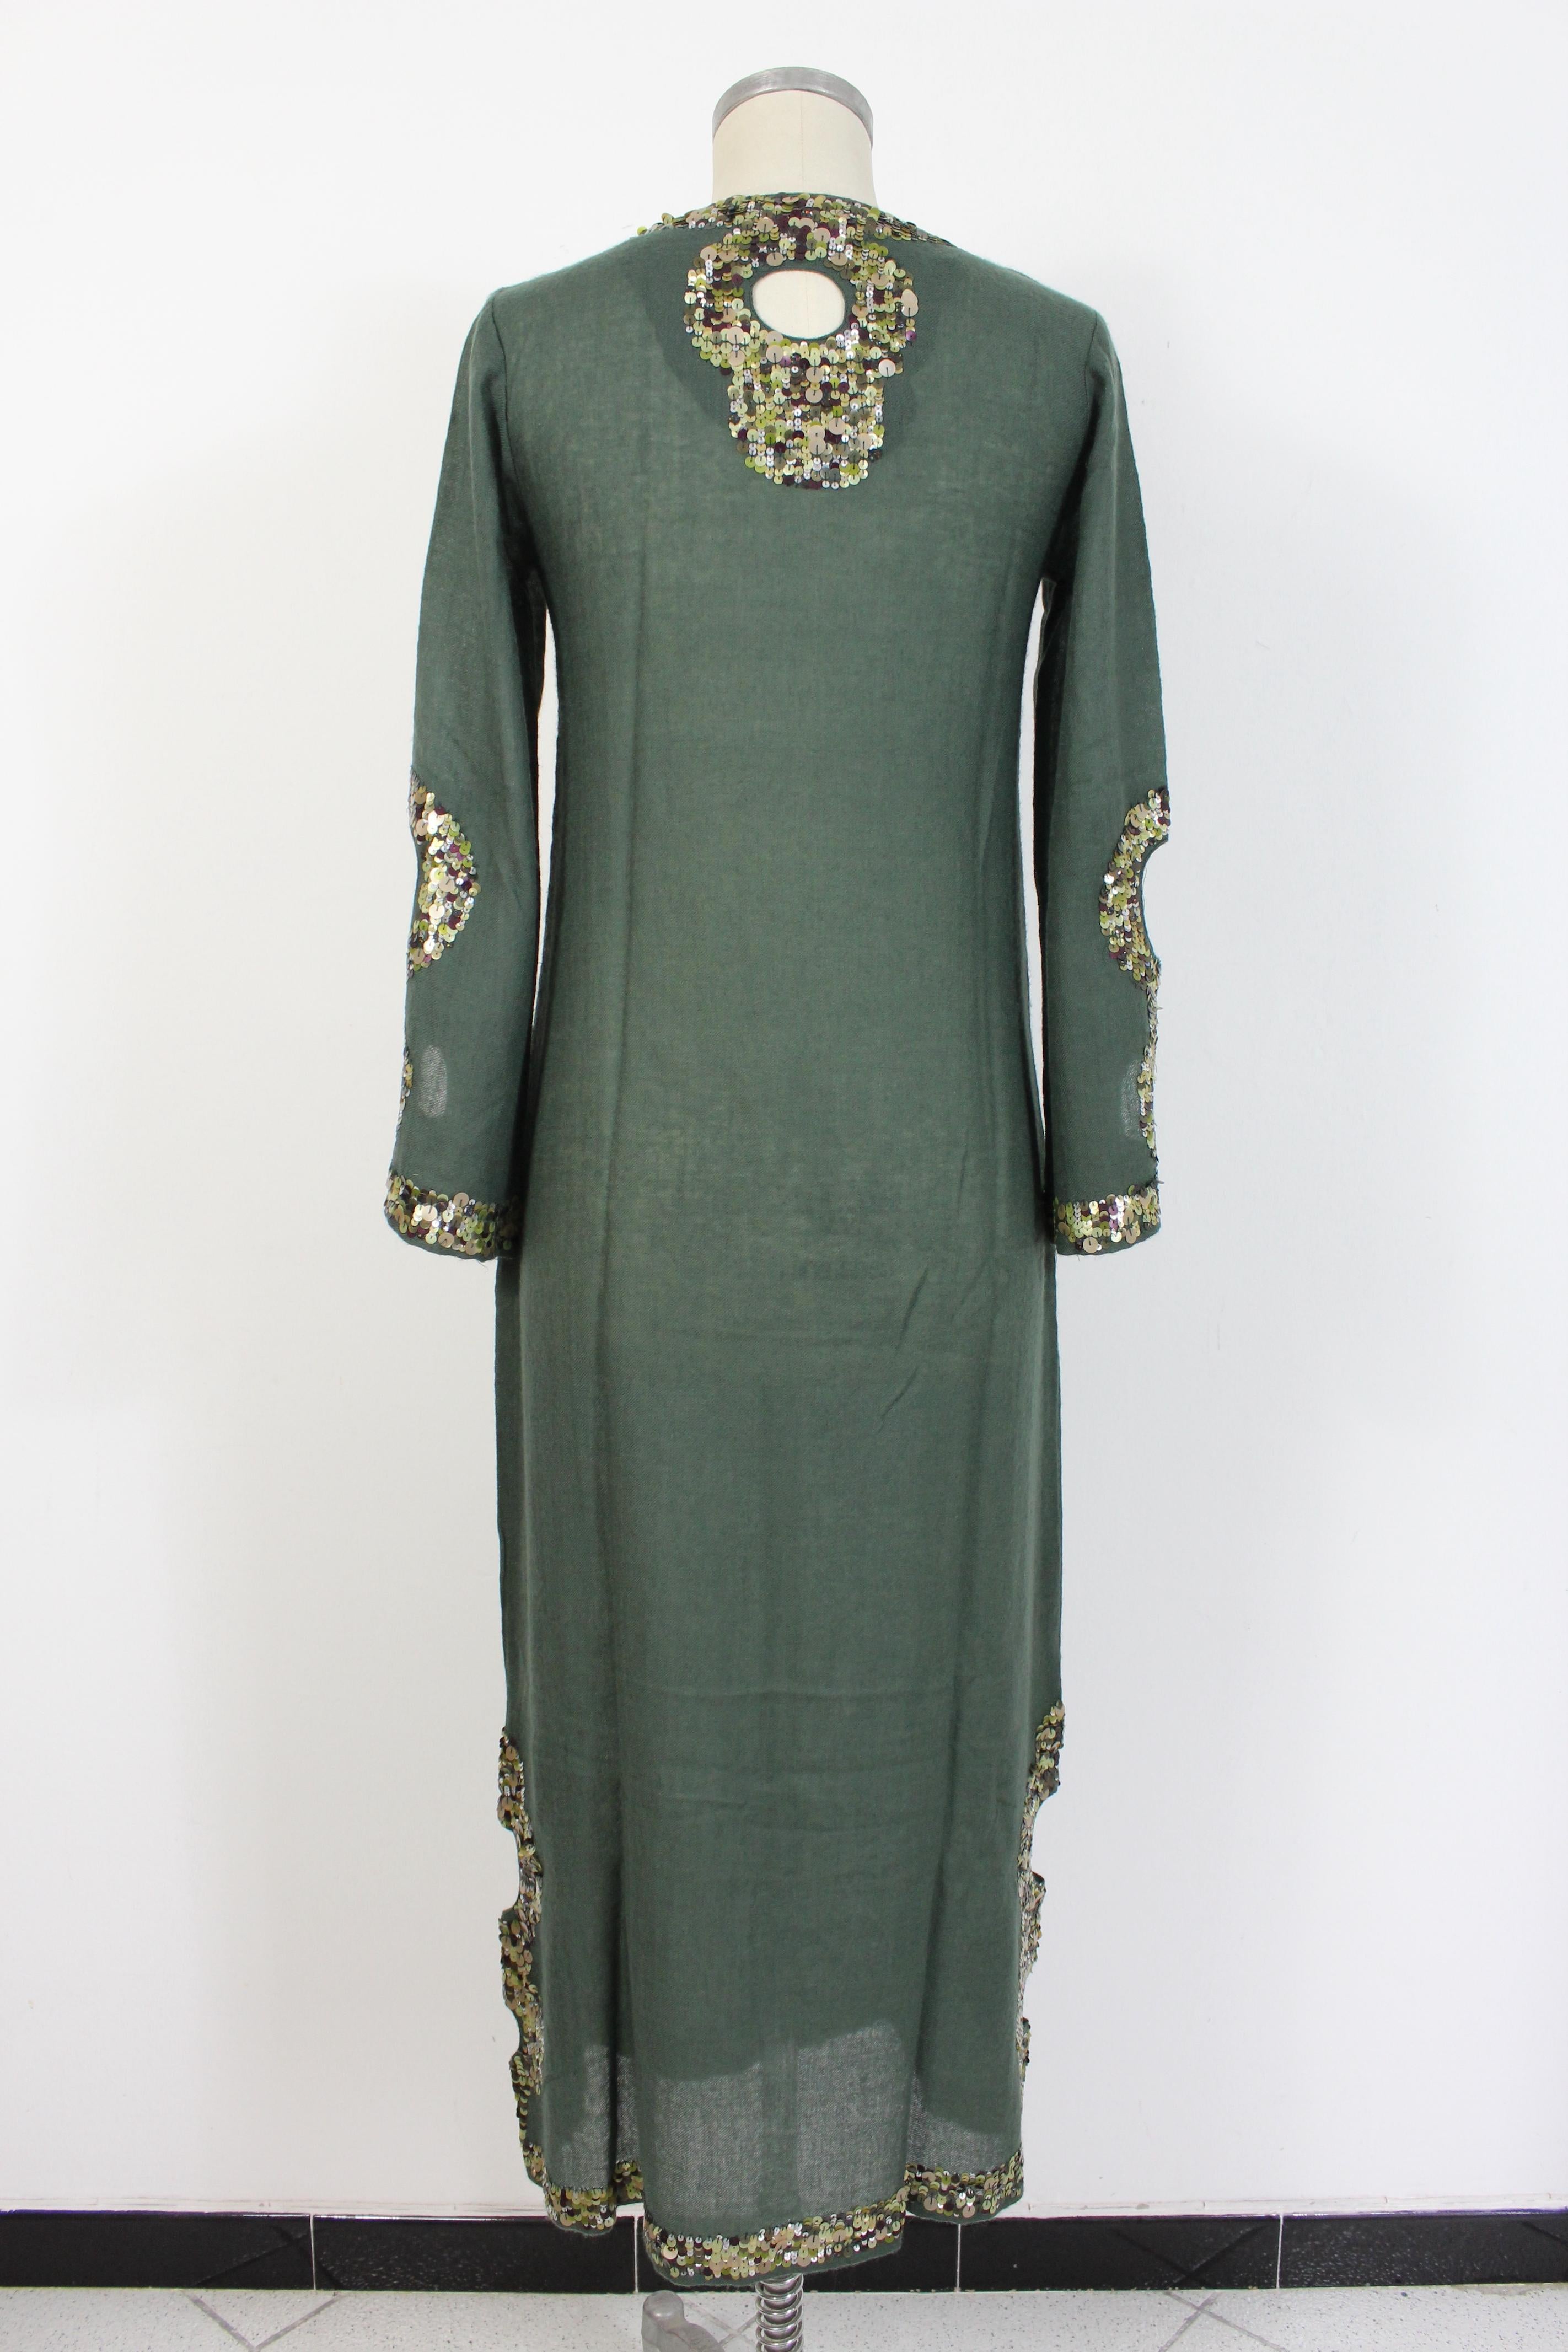 Antik Batik 2000er Frauenkleid. Boho chic Kleid, lange Tunika Modell. Grüne Farbe mit Paillettenapplikationen von grün bis lila. 100% transparenter Wollstoff. Clipverschluss auf der Brust. Hergestellt in Indien.

Zustand: Ausgezeichnet

Artikel